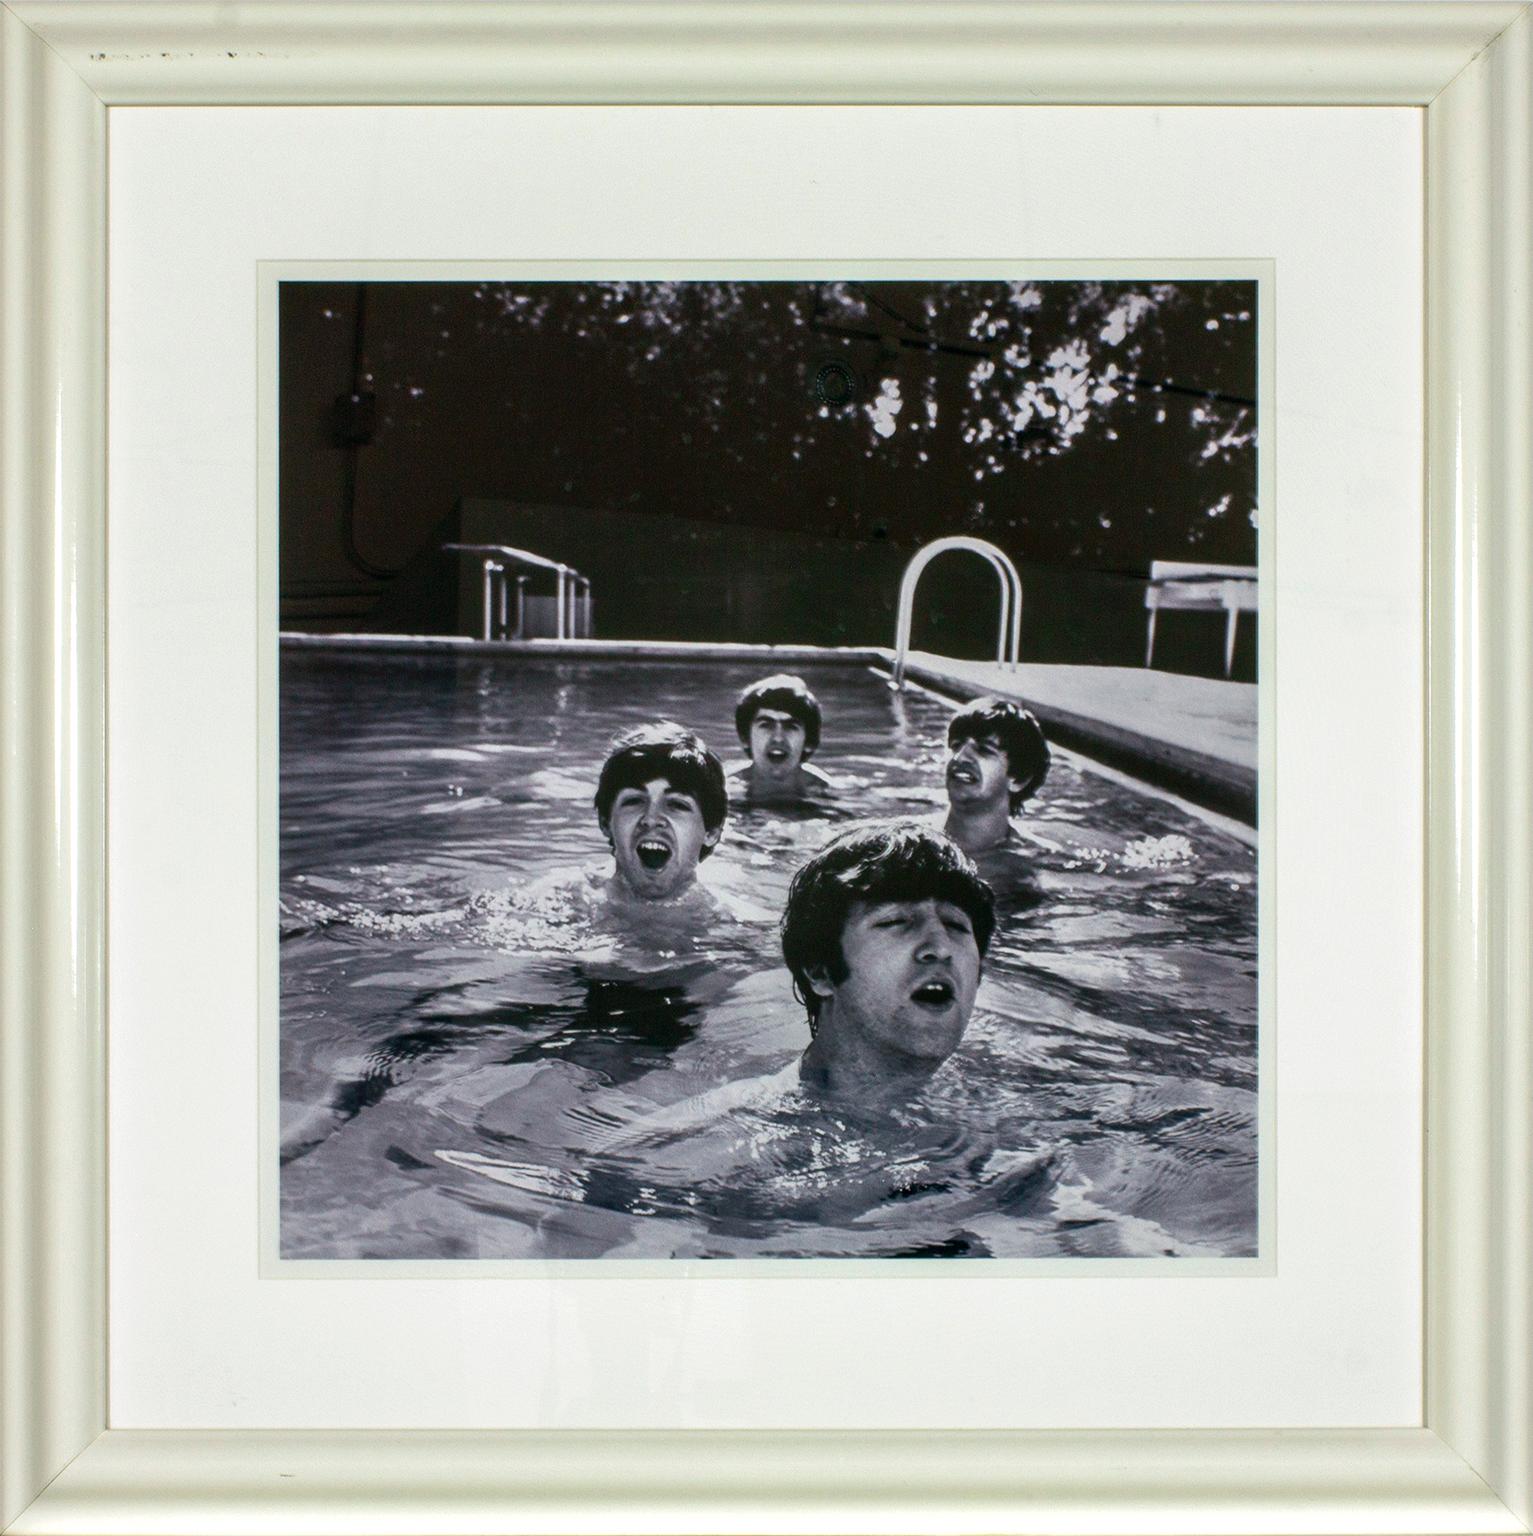 "The Beatles, Miami Beach, 1964" du photographe John Loengard représente Paul McCartney, George Harrison, Ringo Starr et John Lennon faisant du sur-place dans la piscine de l'hôtel Deauville à Miami Beach, en Floride, en février 1964. Cette